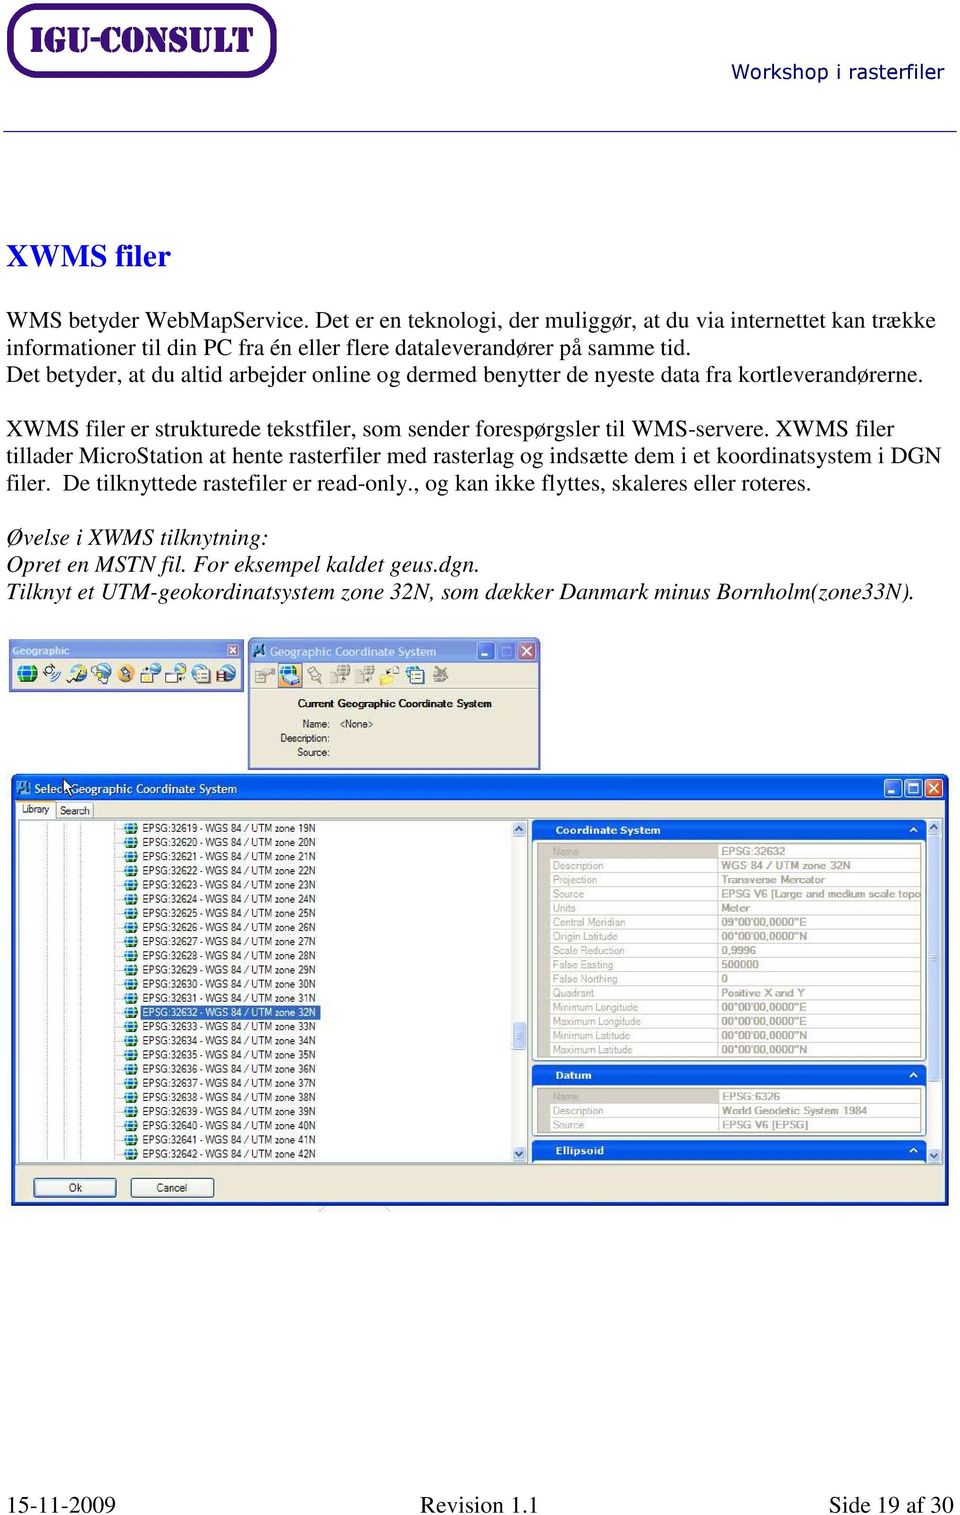 XWMS filer tillader MicroStation at hente rasterfiler med rasterlag og indsætte dem i et koordinatsystem i DGN filer. De tilknyttede rastefiler er read-only.